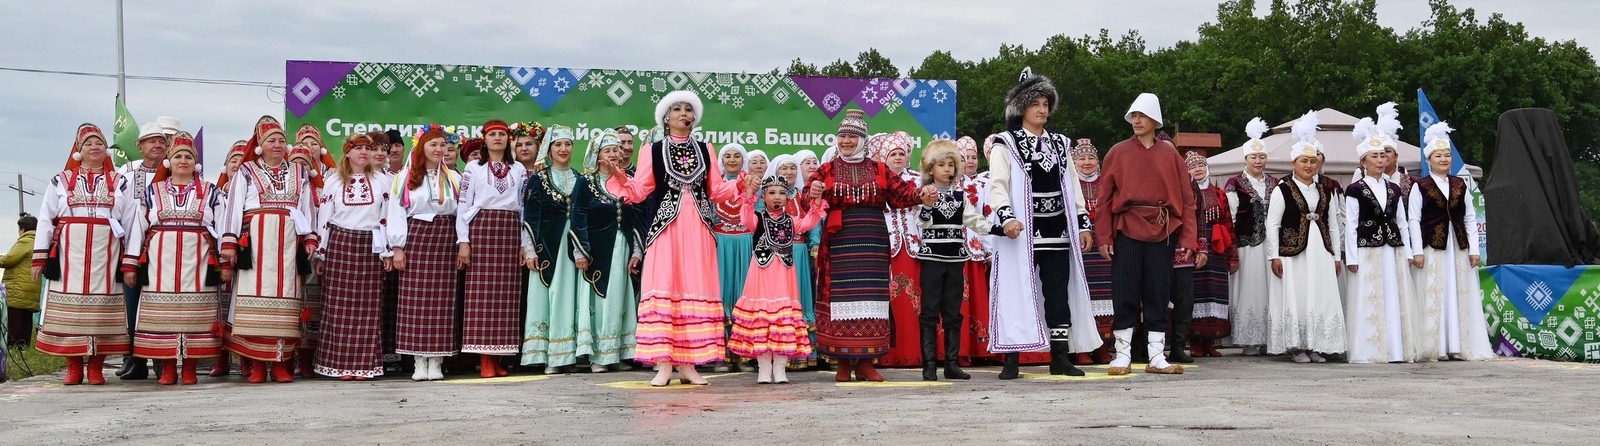 Новое тревел-шоу «Нацинальность.ru» поможет жителям Башкортостана лучше узнать друг друга